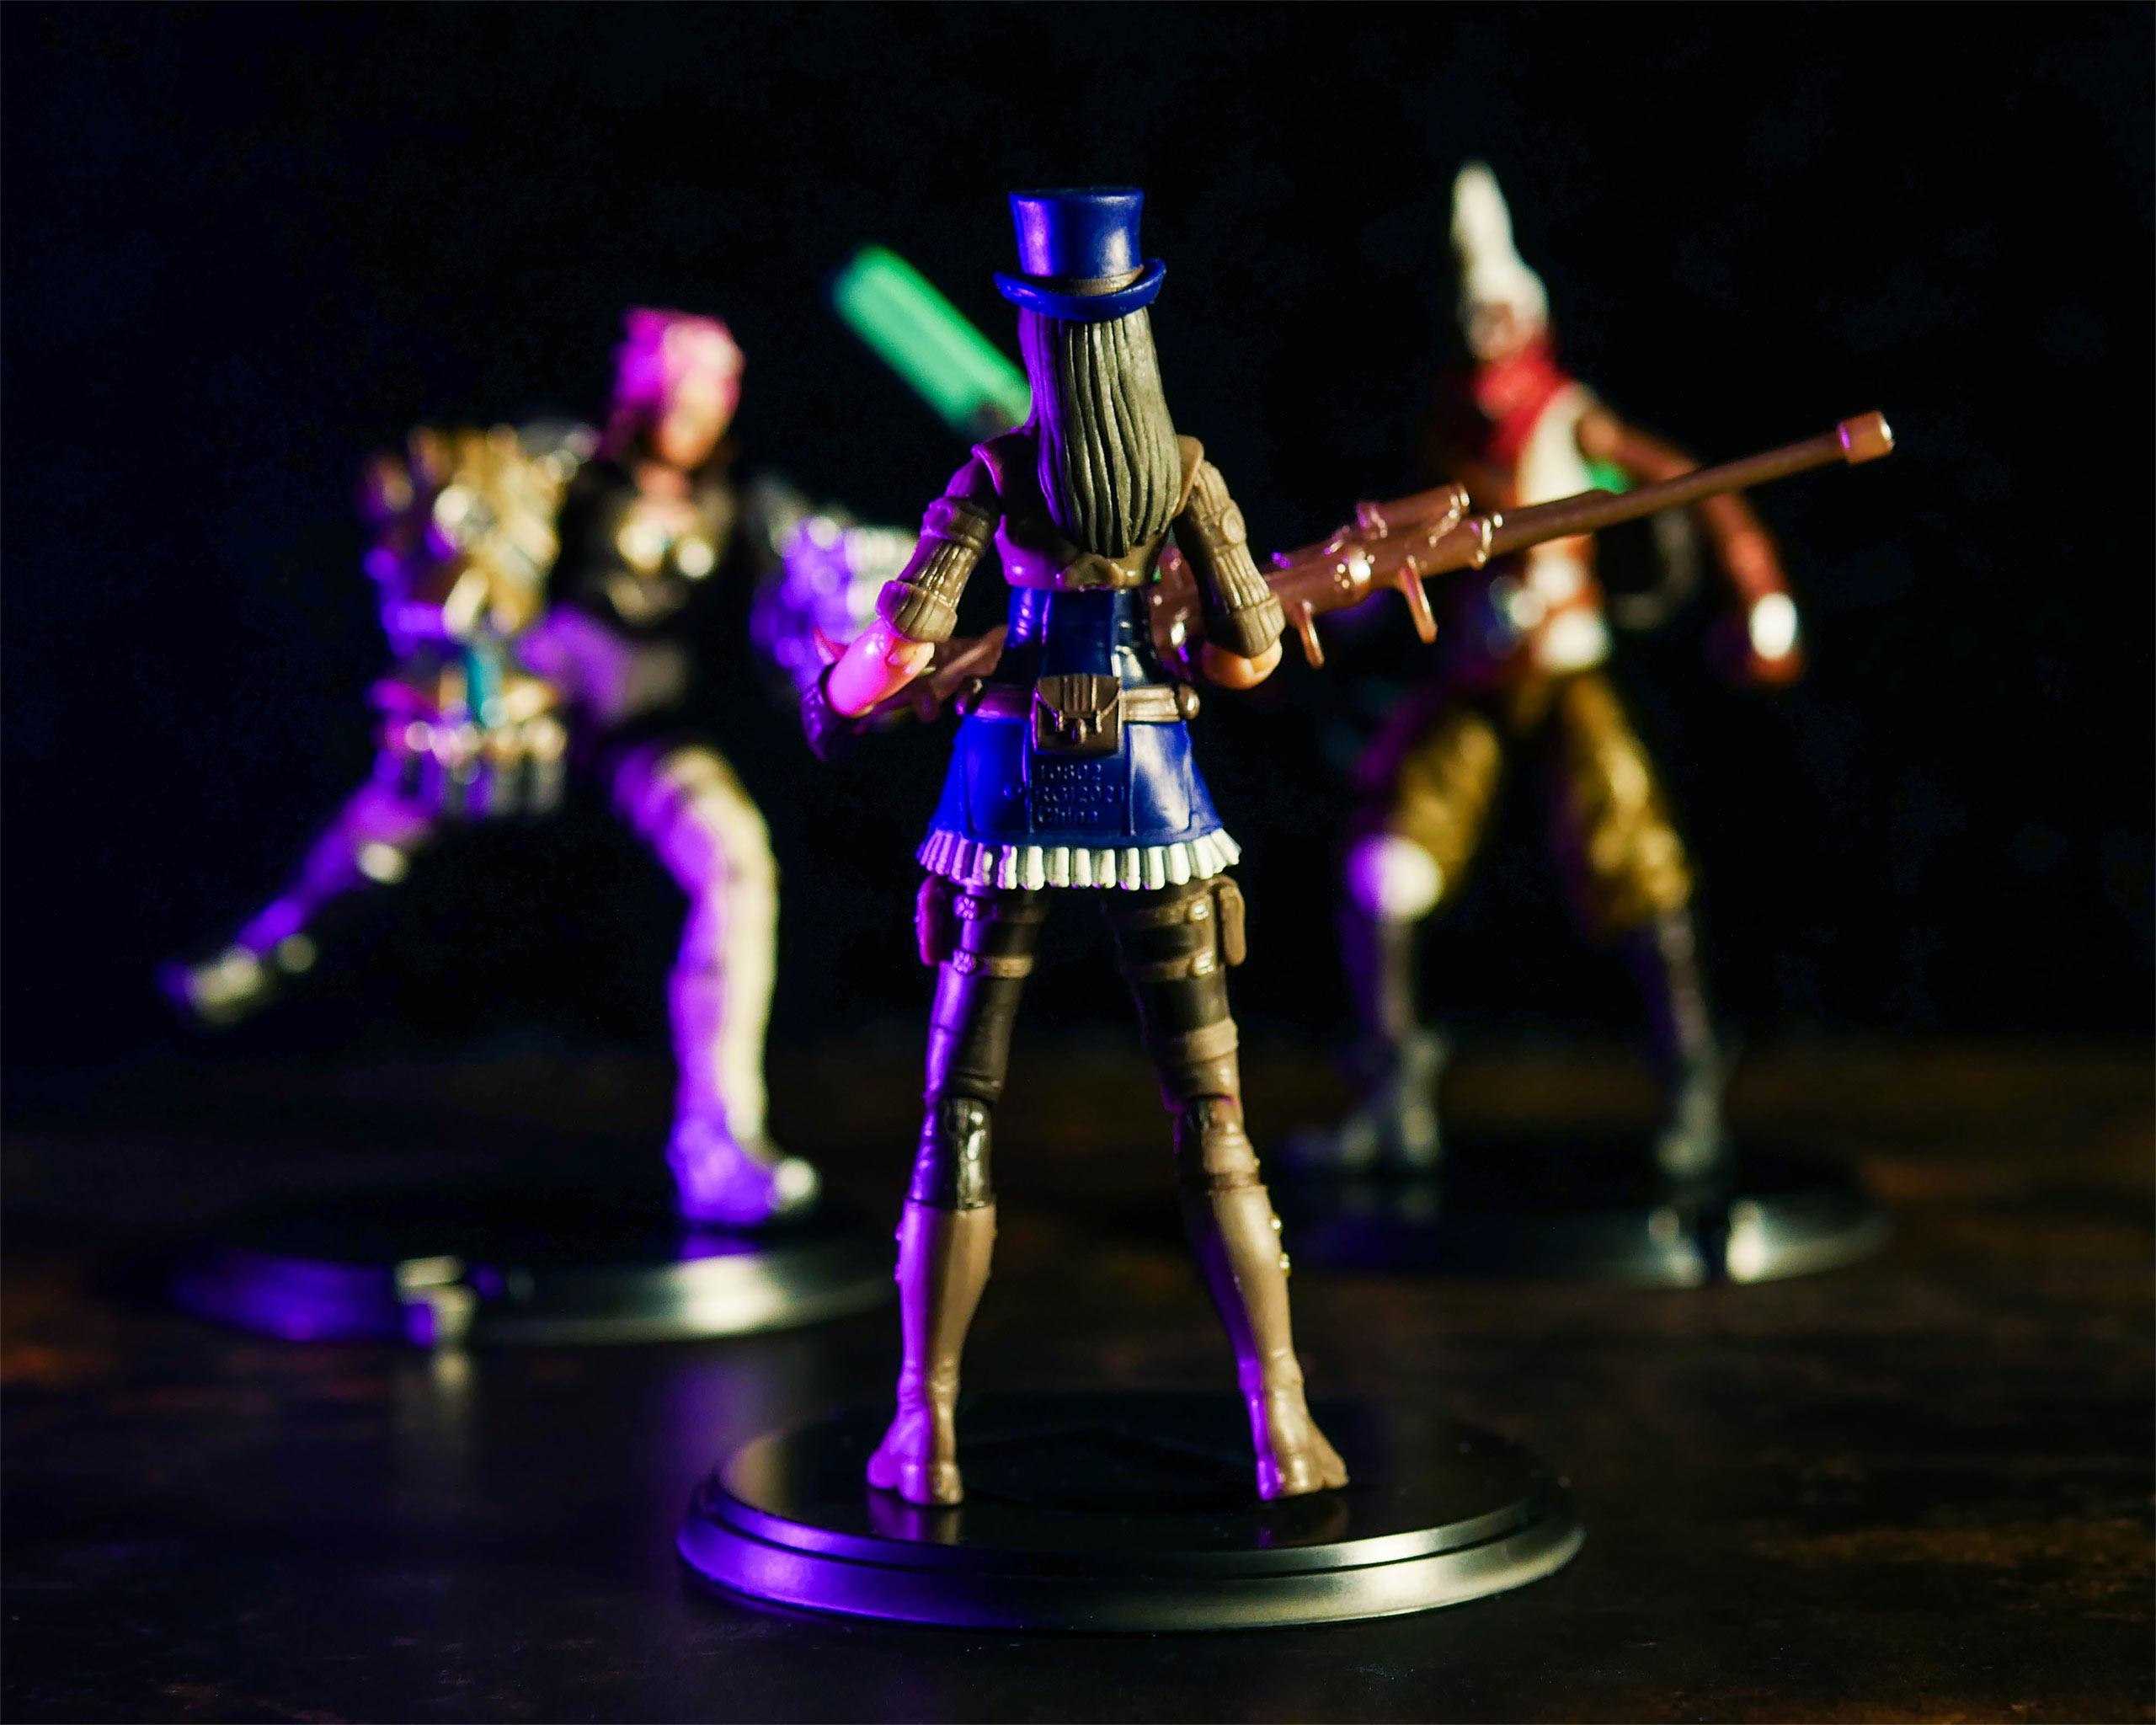 League of Legends - Team Action Figures 5-piece Set